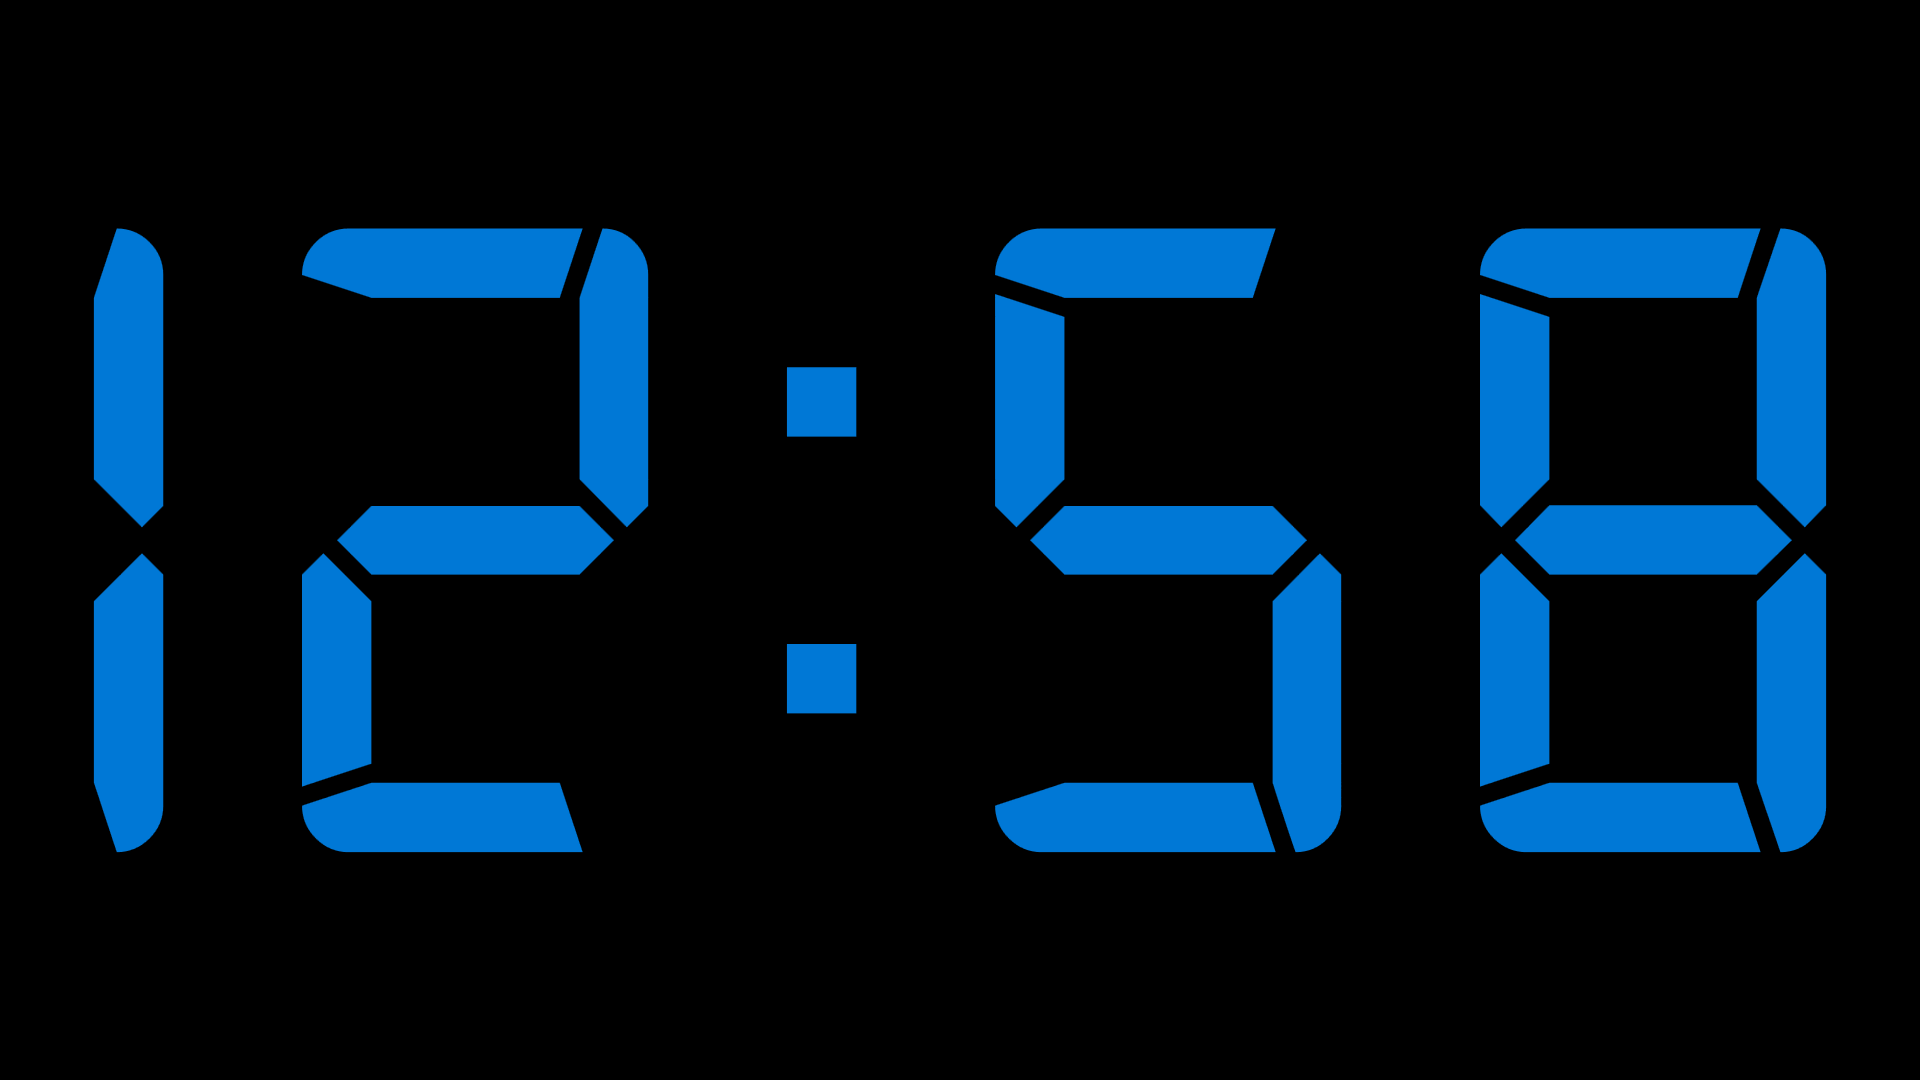 Часы Digital Clock 200730138828.4. Цифровые часы на экран. Скринсейвер электронные часы. Большие электронные часы. Время 23 0 6